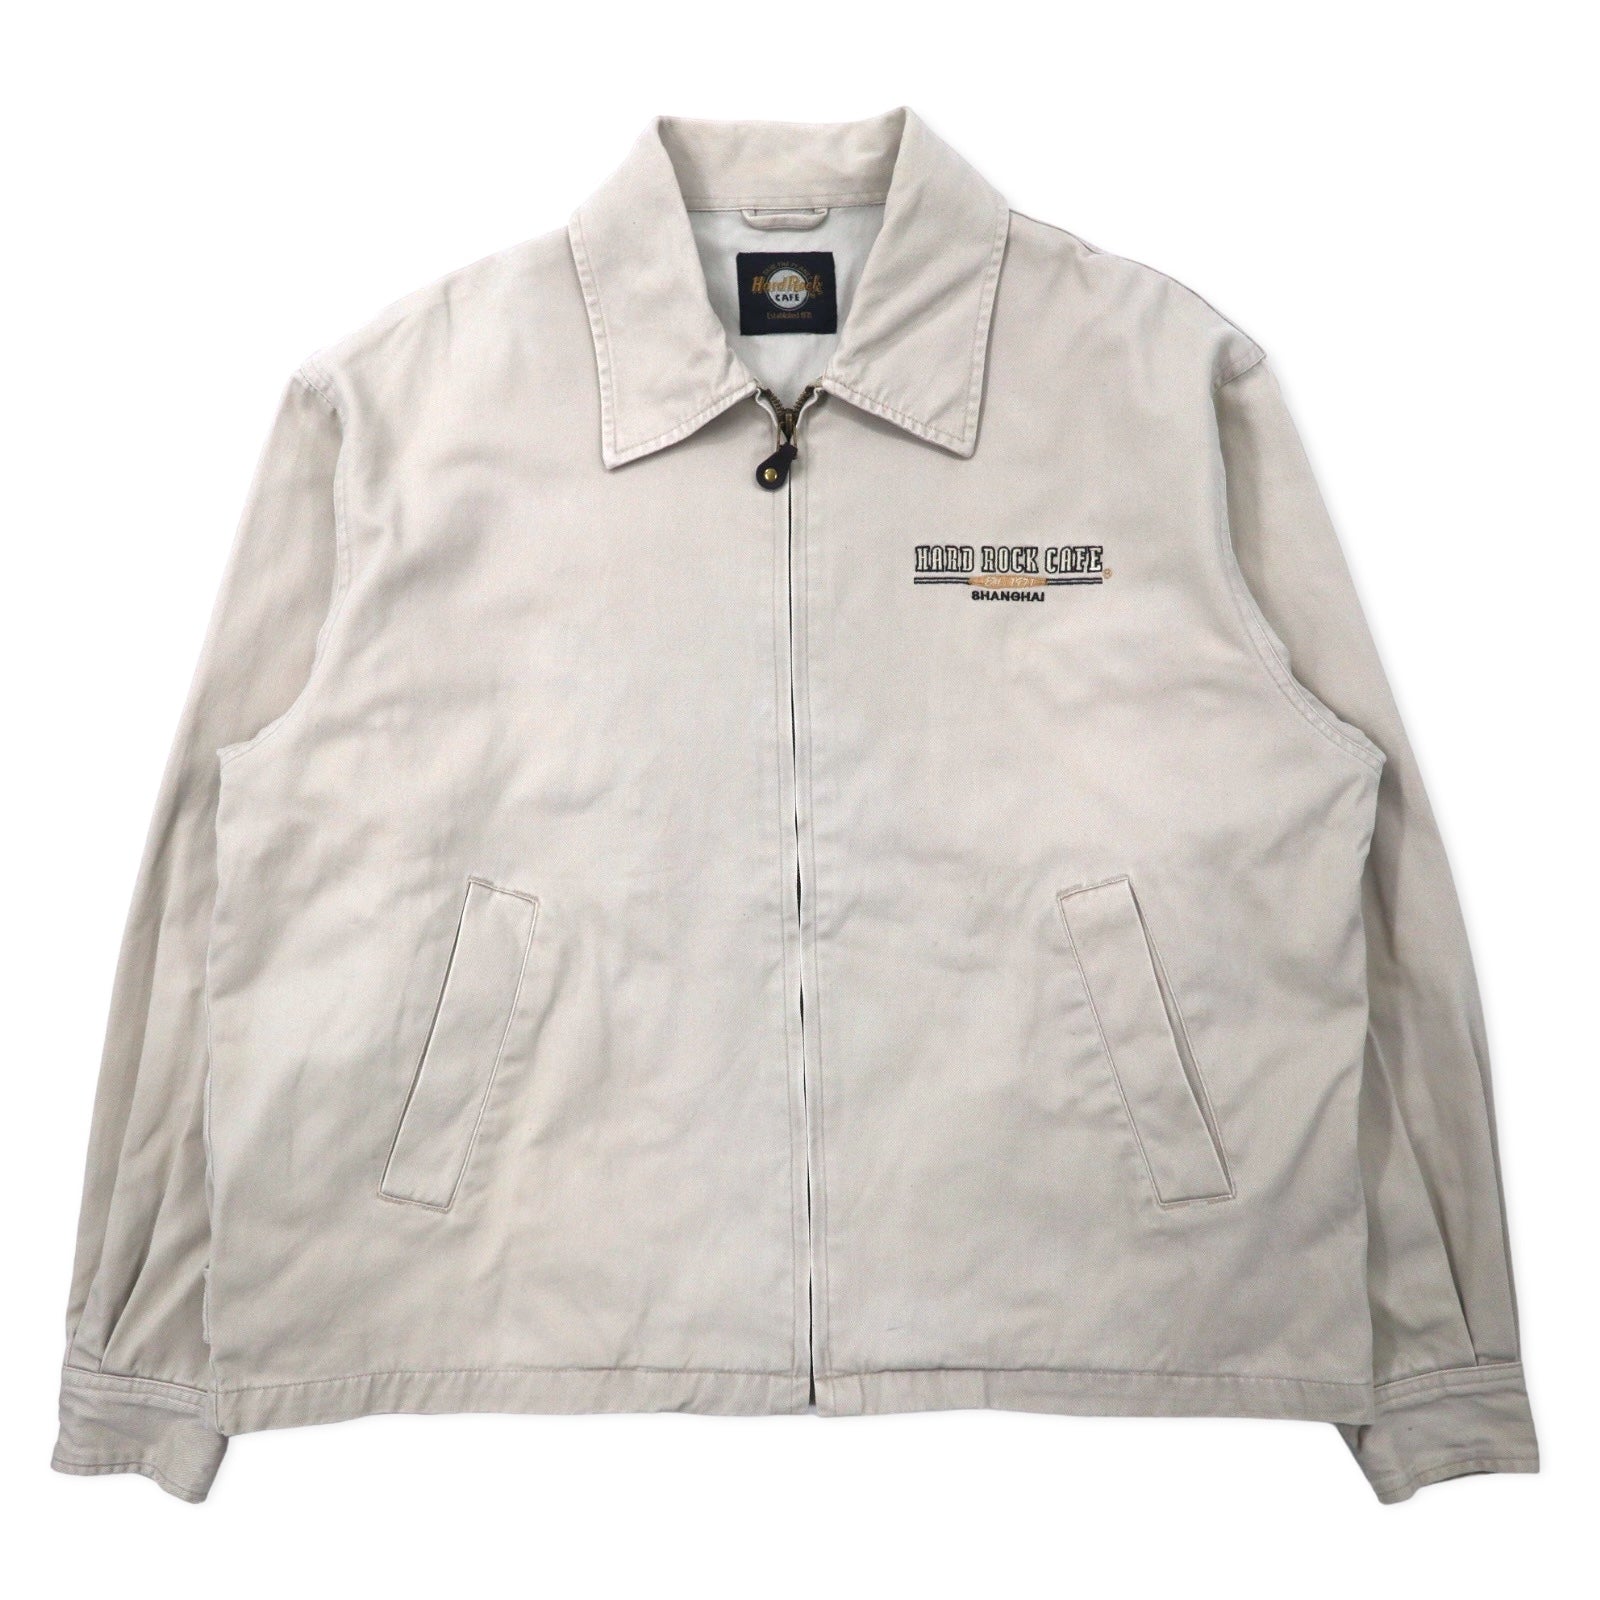 HARD ROCK CAFE 90's Swing Top Harrington Jacket XL Beige Cotton 